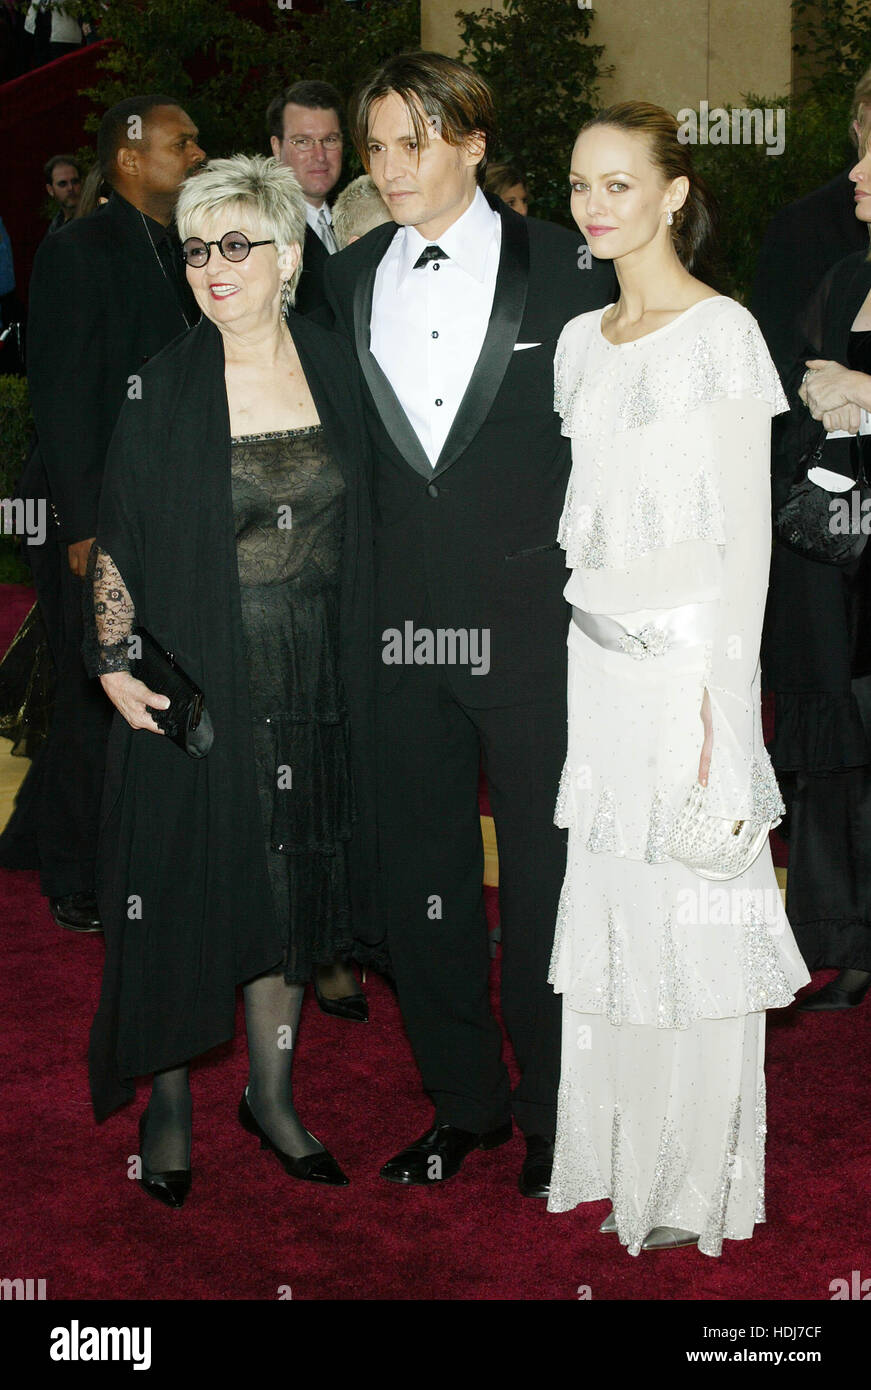 Schauspieler Johnny Depp (c) mit Mutter Betty Sue Palmer (l) und Freundin Vanessa Paradis (r) bei den Academy Awards in Hollywood, Kalifornien am 29. Februar 2004.  Bildnachweis: Francis Specker Stockfoto